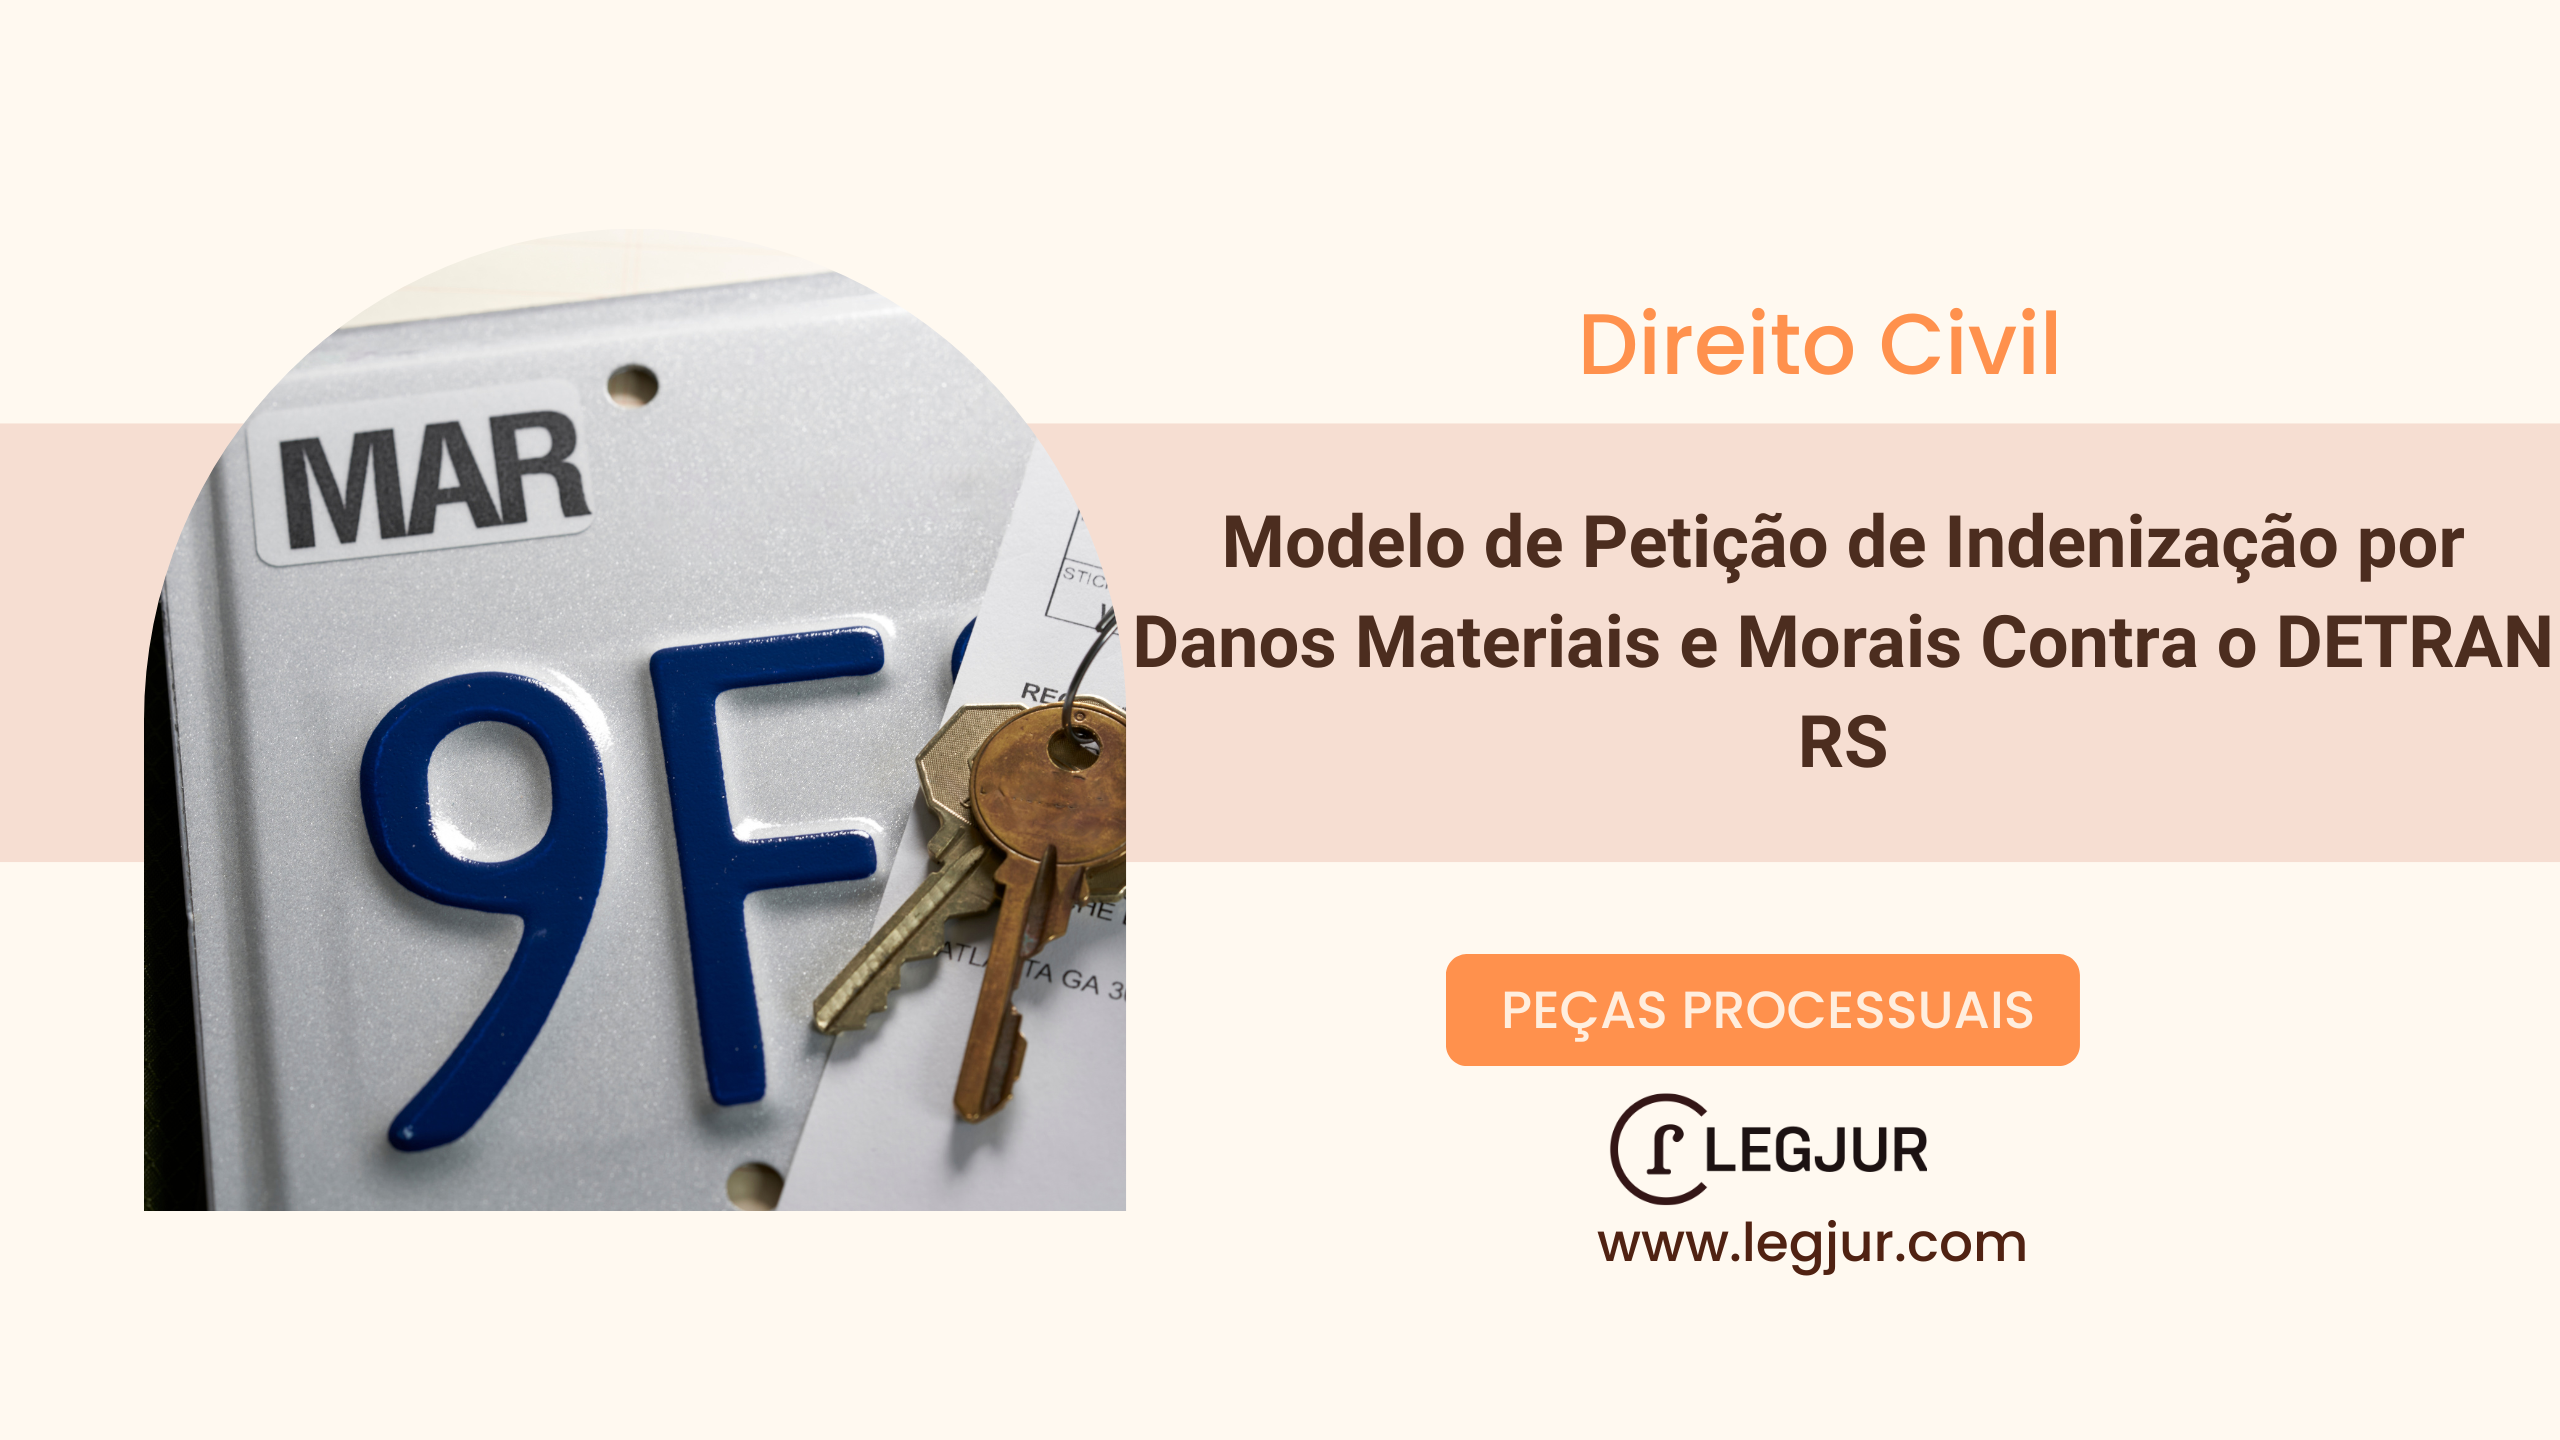 Modelo de Petição inicial (Responsabilidade civil do Estado) de Indenização por Danos Materiais e Morais Contra o DETRAN RS